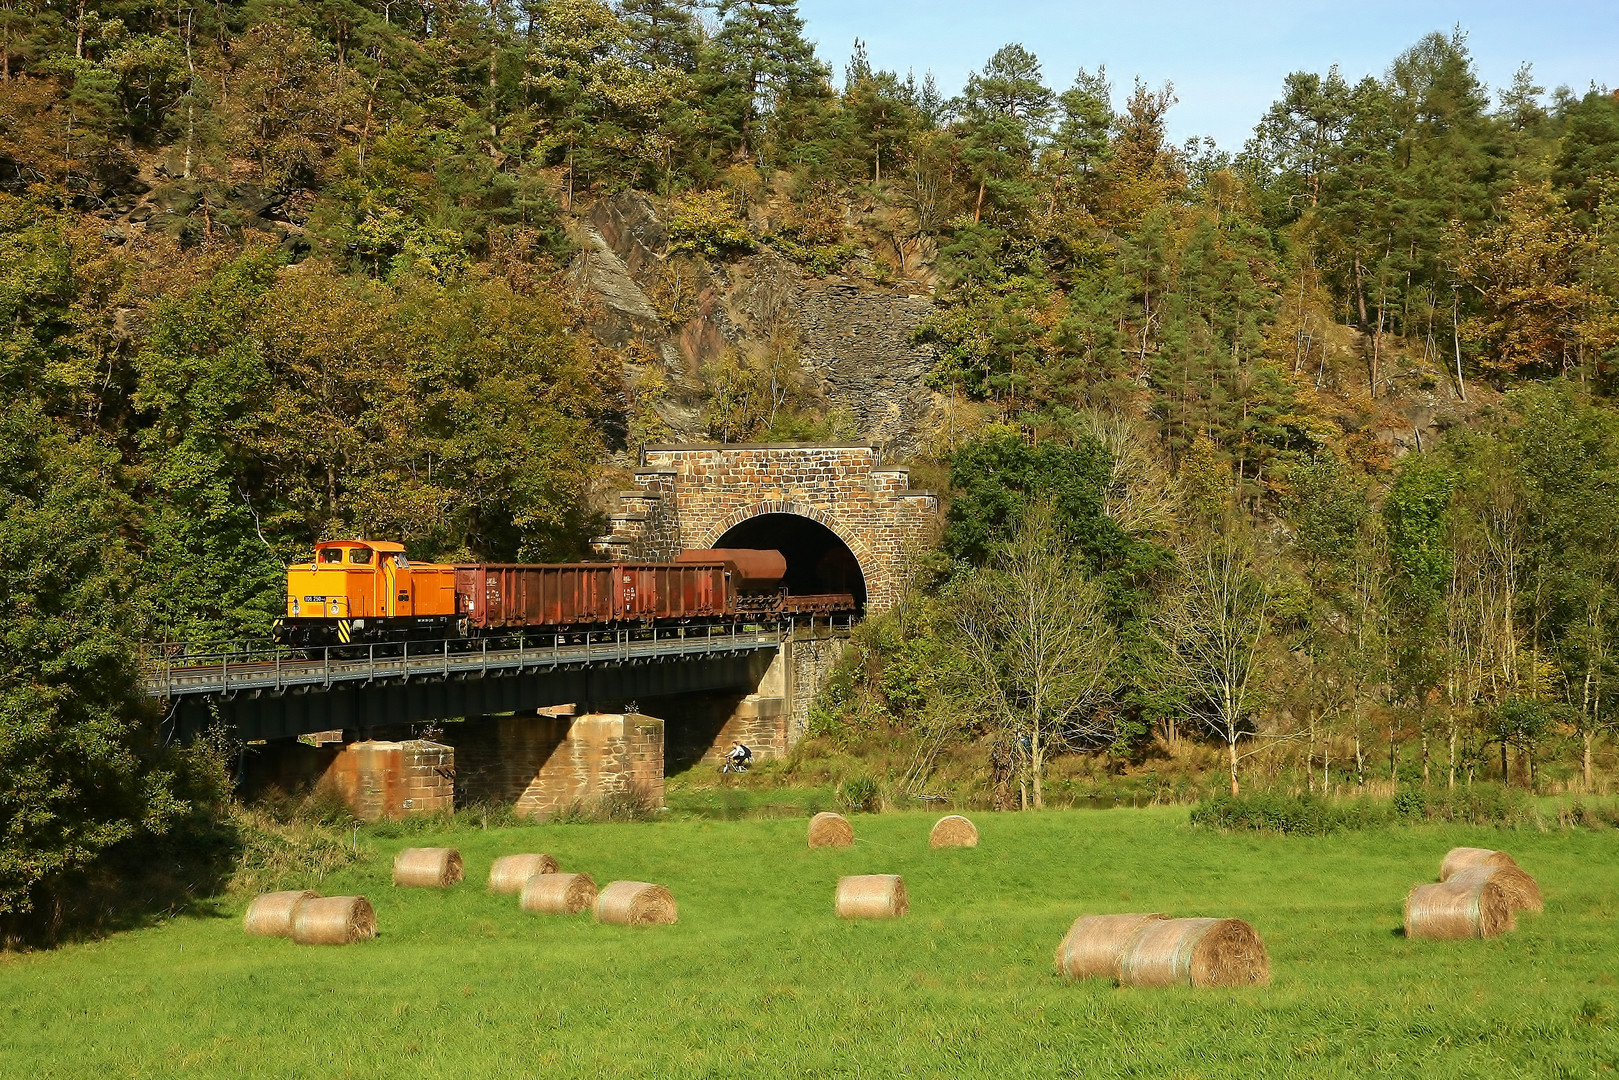 Herbst am Lochguttunnel